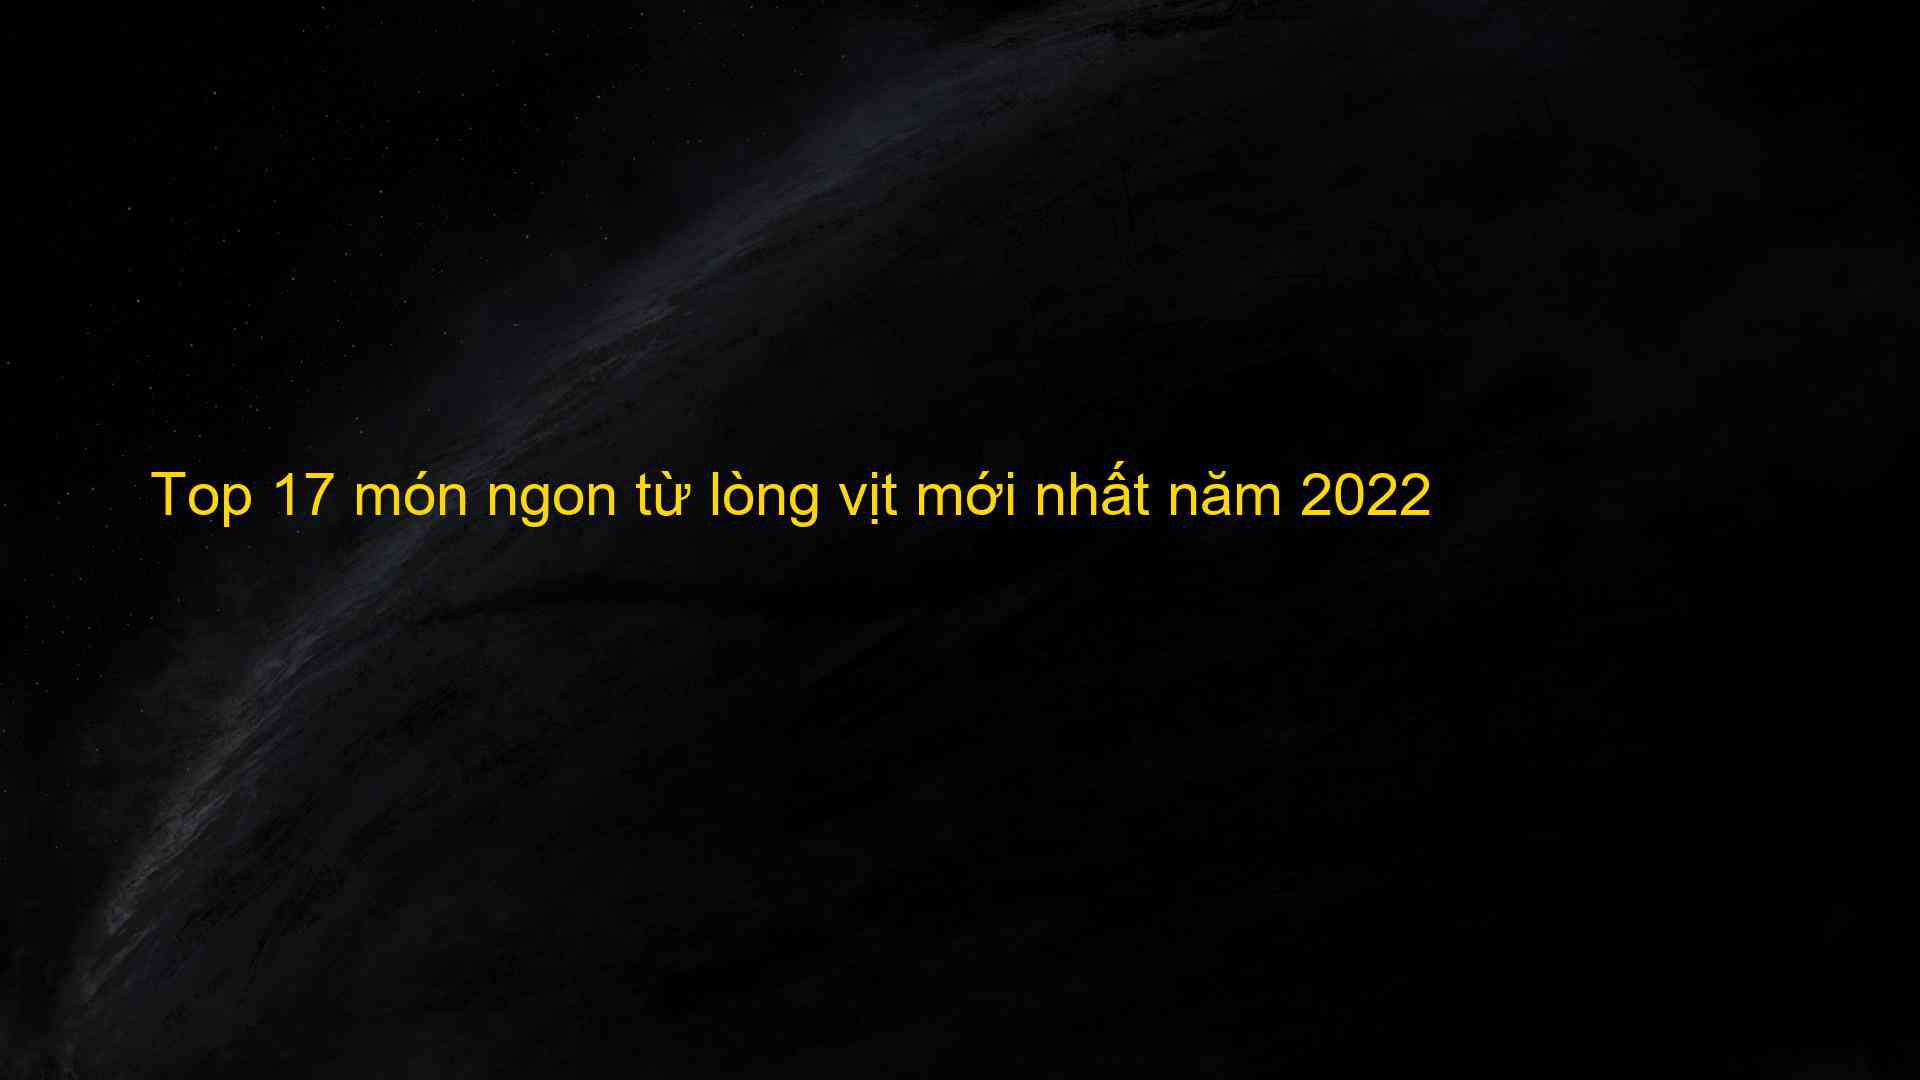 Top 17 món ngon từ lòng vịt mới nhất năm 2022 - Kiến Thức Cho Người lao Động Việt Nam